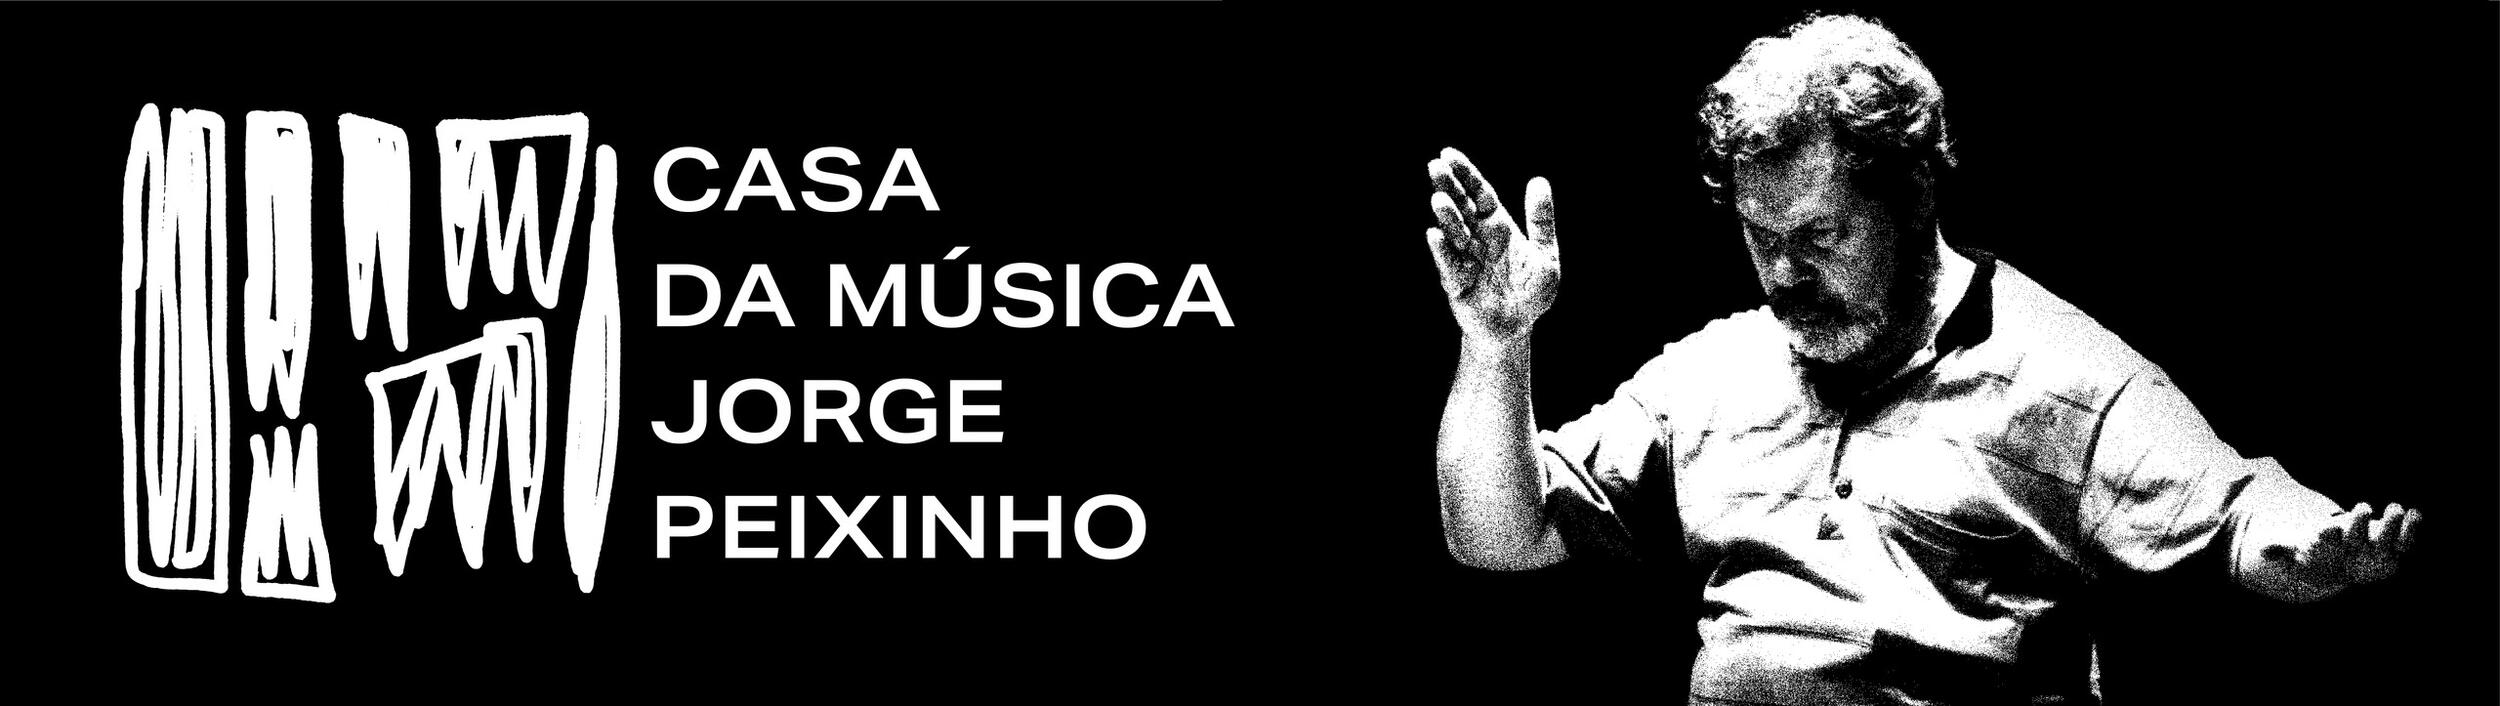 Casa da Música Jorge Peixinho estreia identidade visual inovadora baseada no legado do maestro